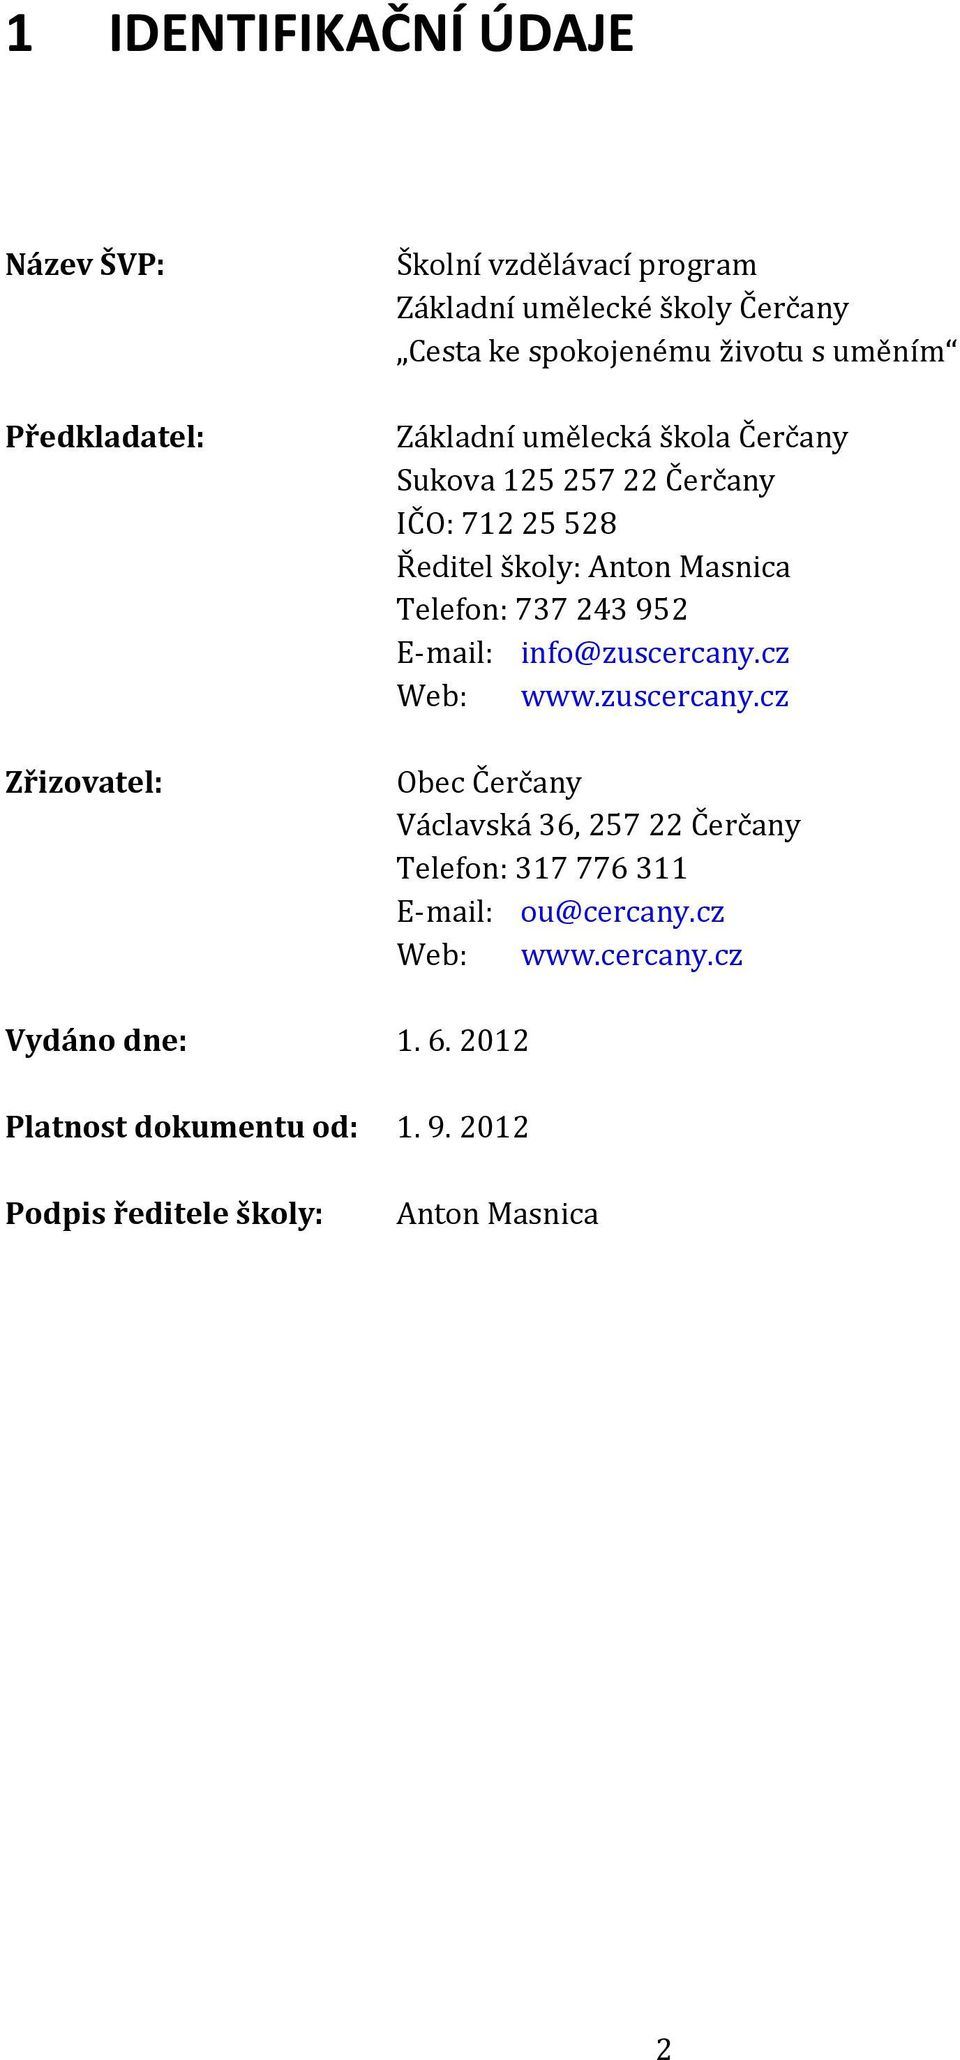 Telefon: 737 243 952 E mail: info@zuscercany.cz Web: www.zuscercany.cz Obec Čerčany Václavská 36, 257 22 Čerčany Telefon: 317 776 311 E mail: ou@cercany.